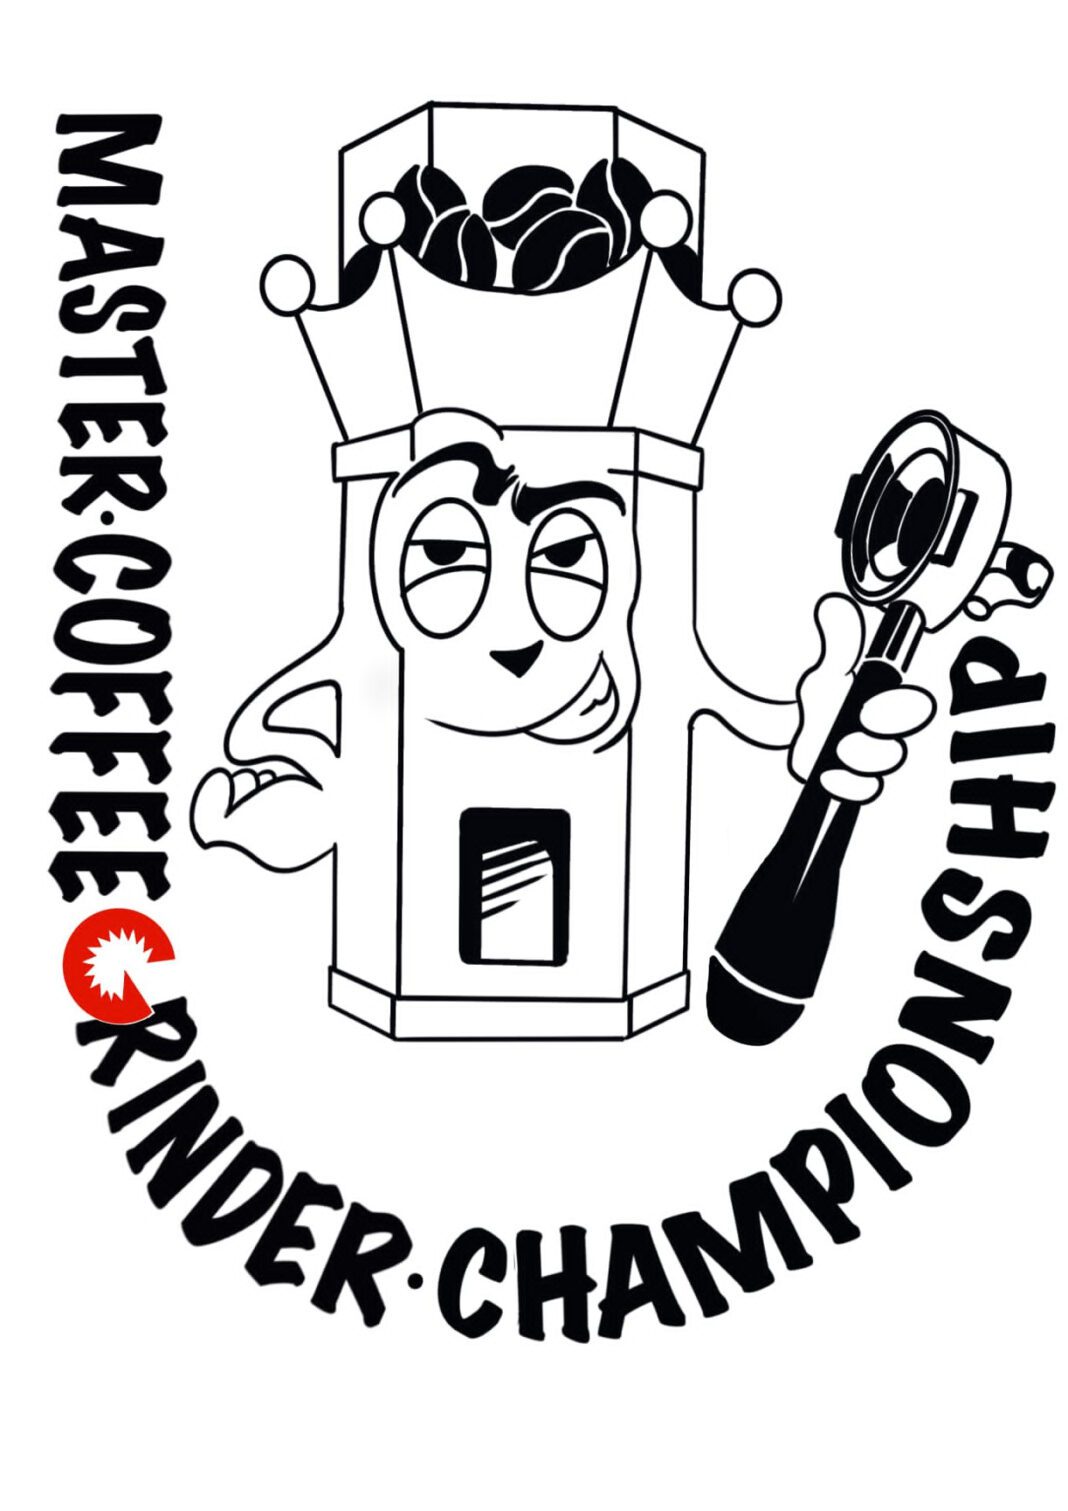 Master Coffee grinder Championship diemme